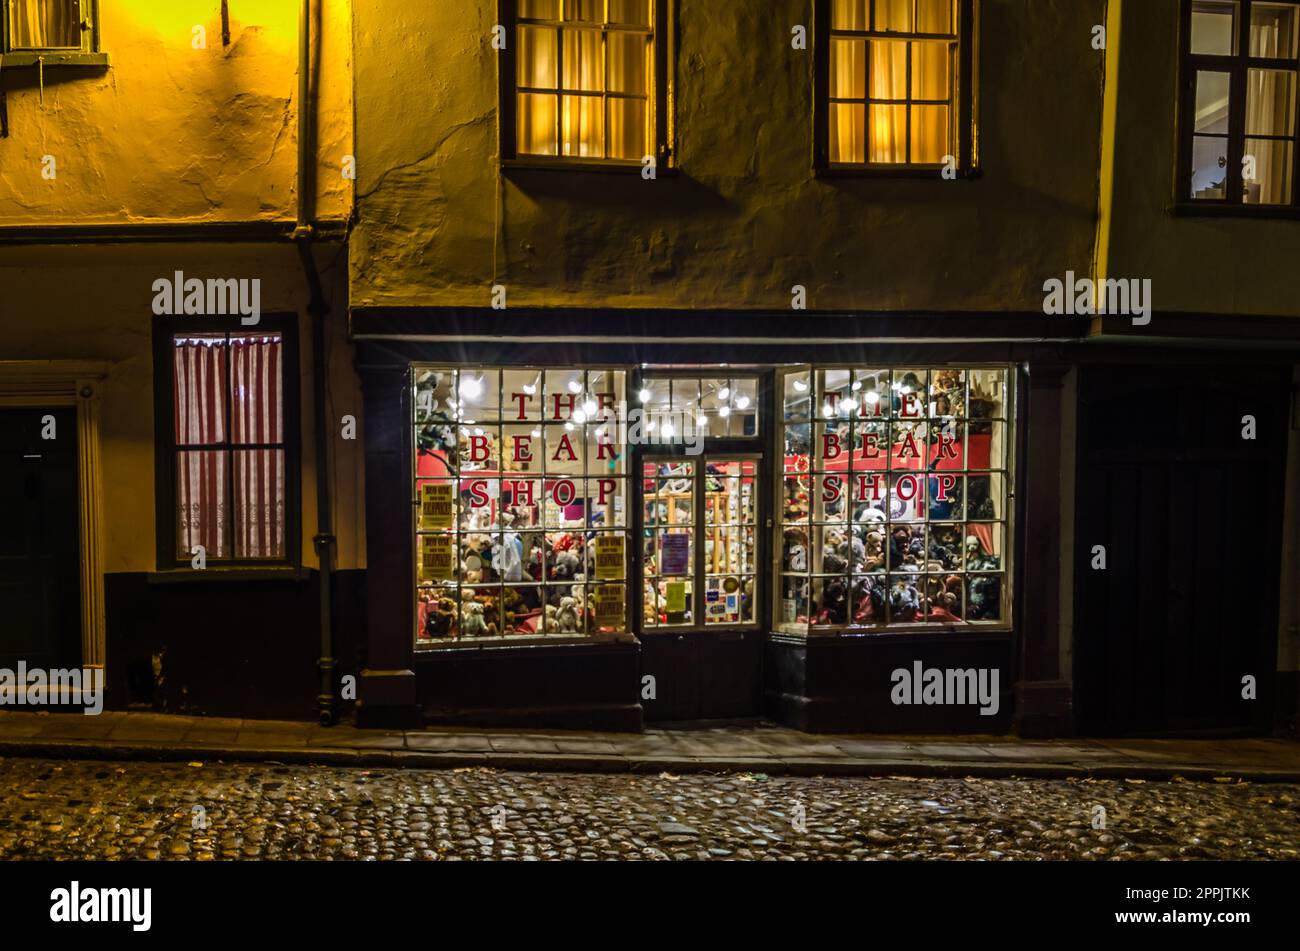 NORWICH, INGHILTERRA, Regno Unito - 29 DICEMBRE 2013: Vista notturna del negozio di orsacchiotti "The Bear Shop" nella città vecchia di Norwick, Norfolk, Inghilterra, Regno Unito Foto Stock